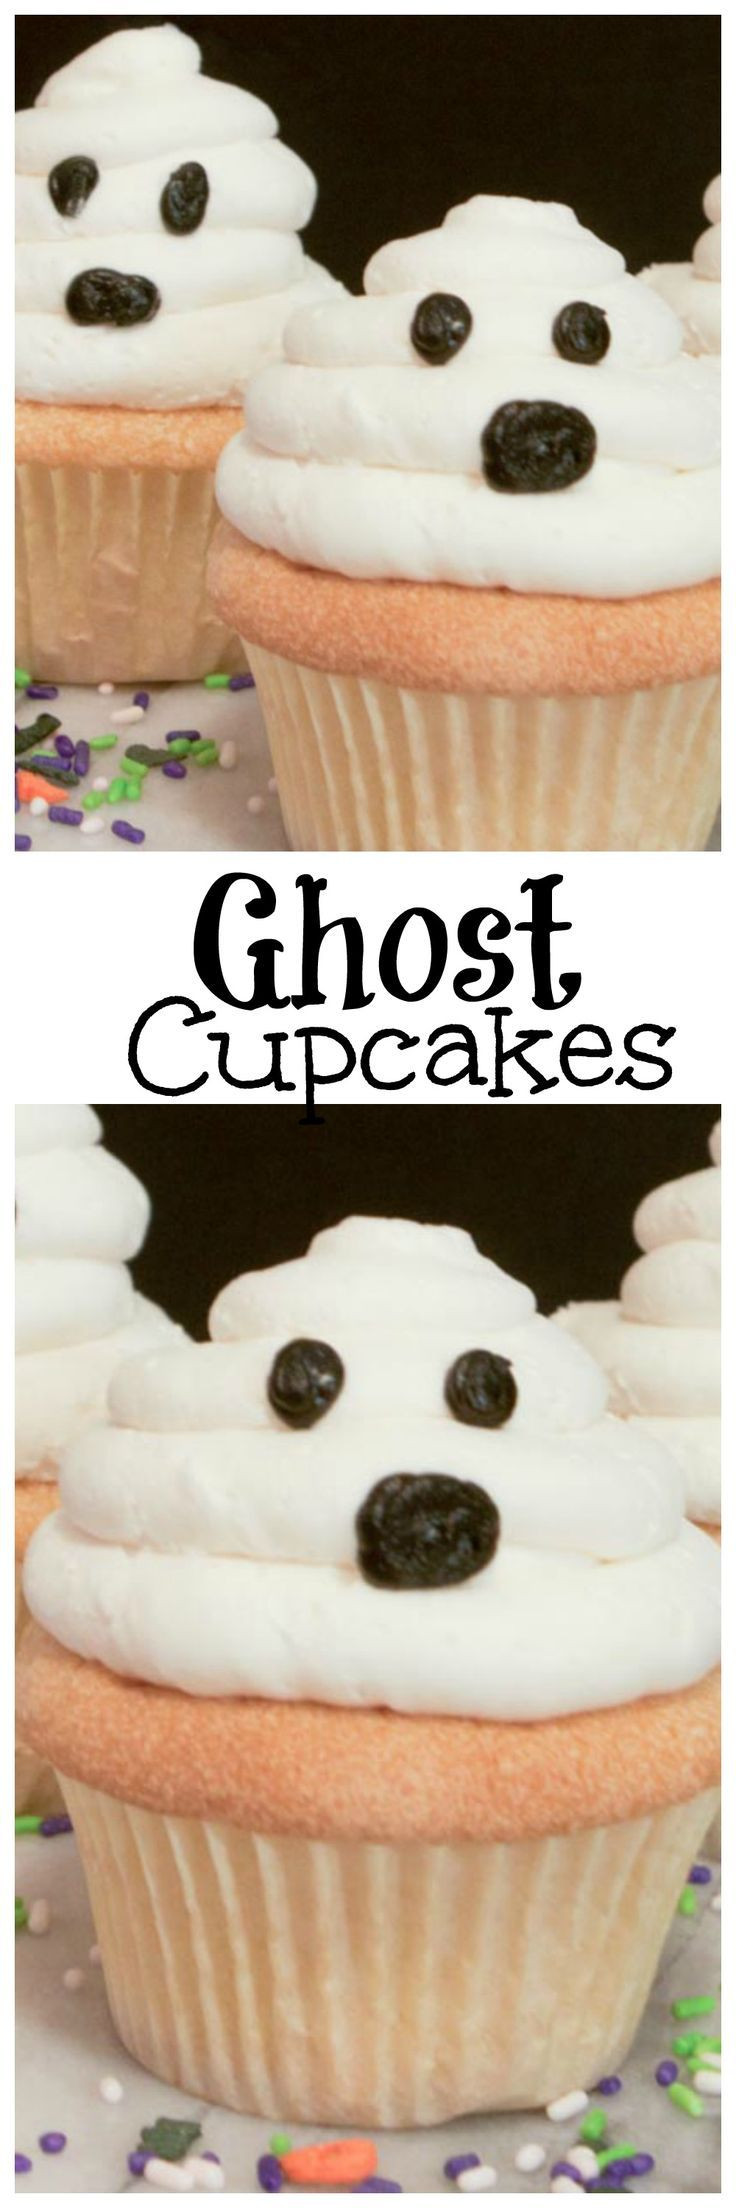 Halloween Cupcakes Pinterest
 Best 20 Halloween cupcakes ideas on Pinterest